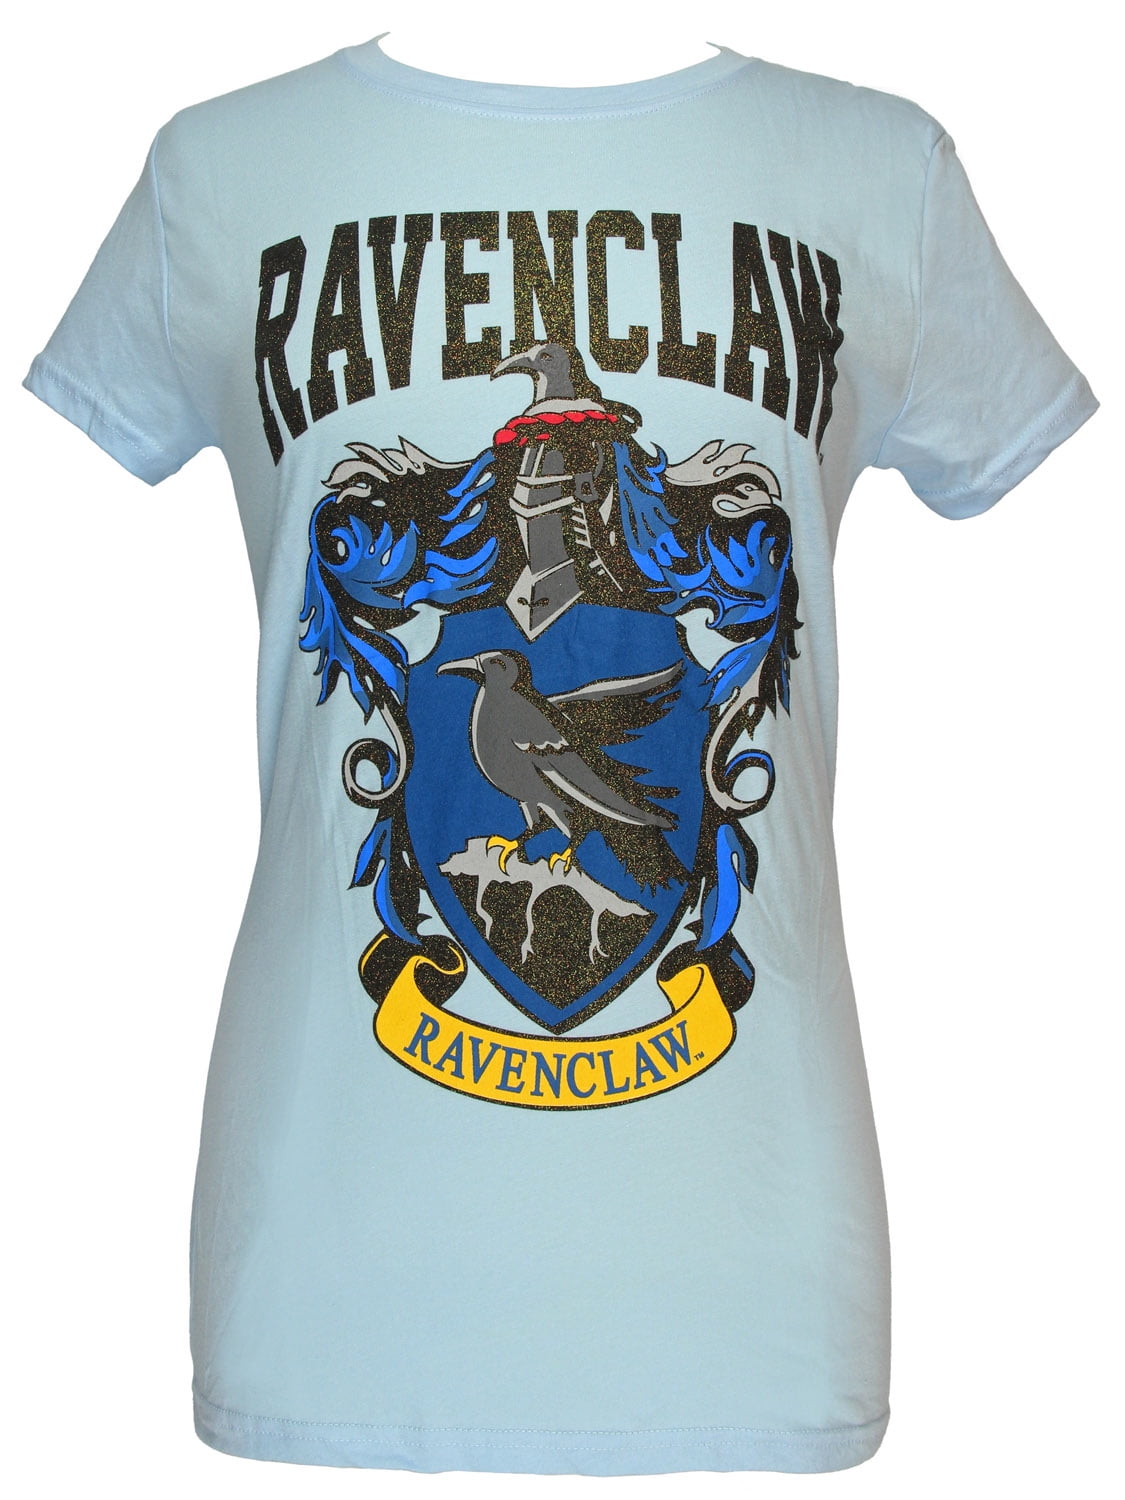 Harry Potter Hogwarts Ravenclaw blue sz medium cotton blend short sleeve tee NEW 